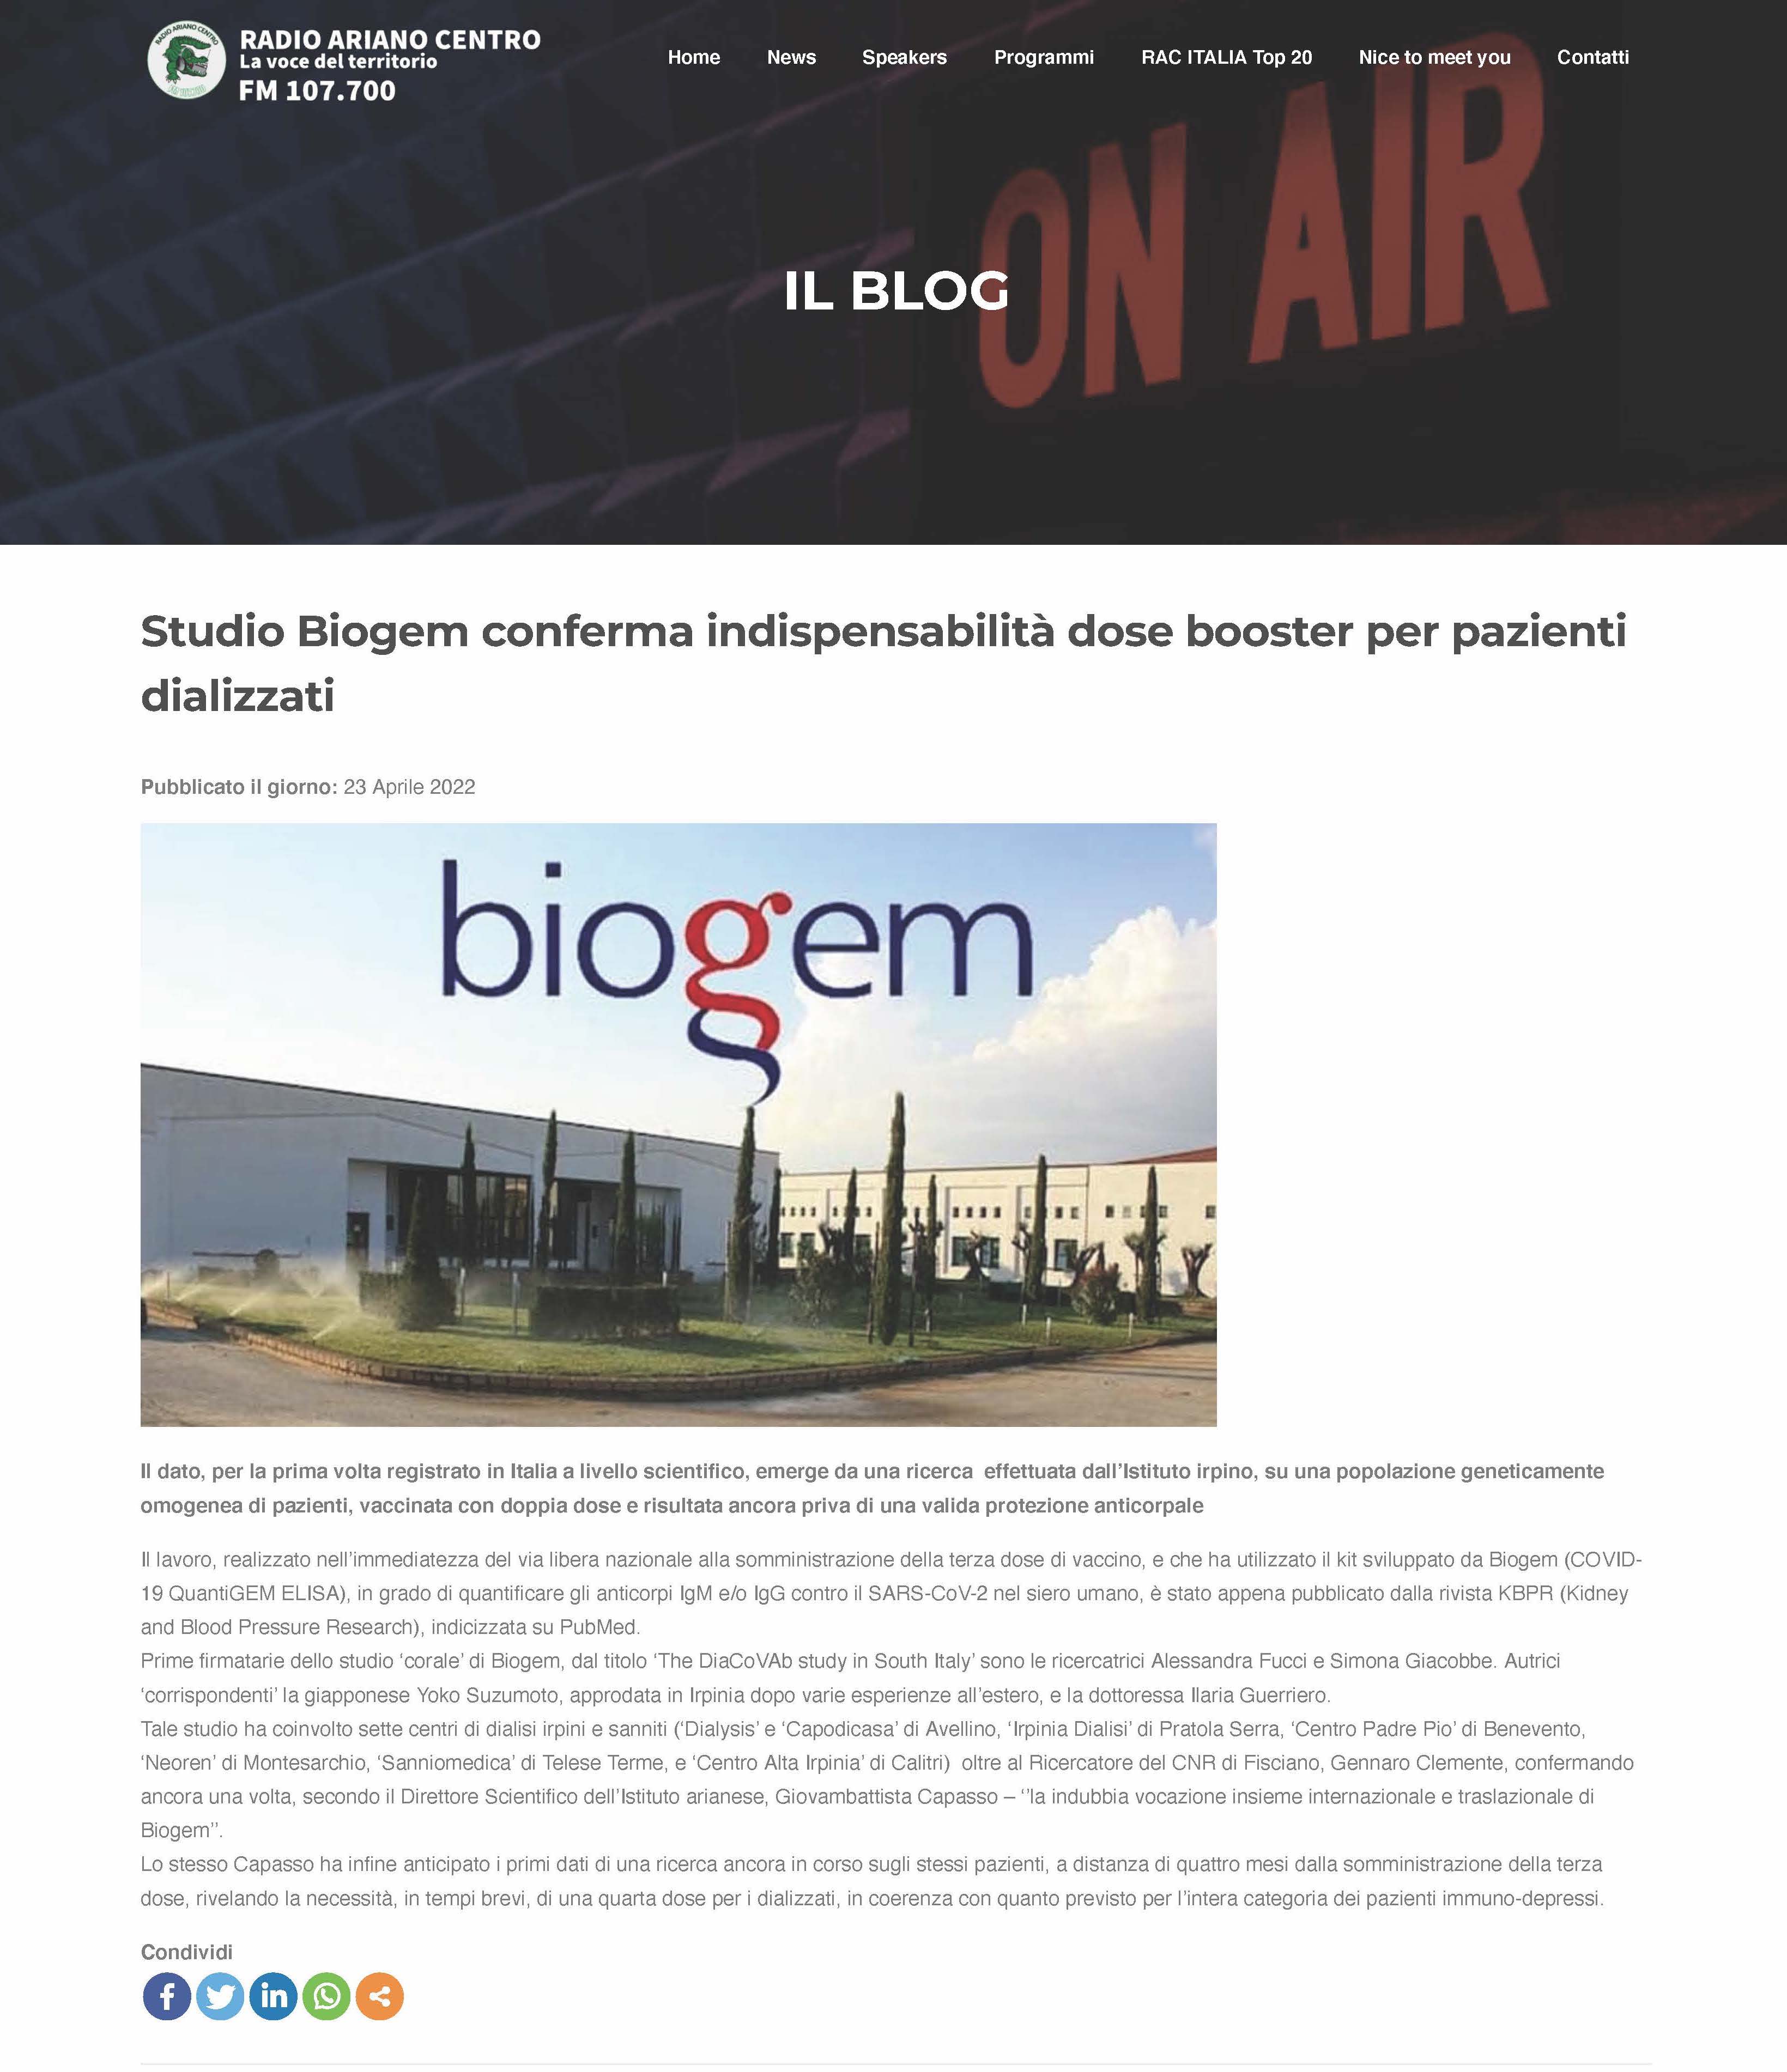 Studio Biogem conferma indispensabilità dose booster per pazienti dializzati